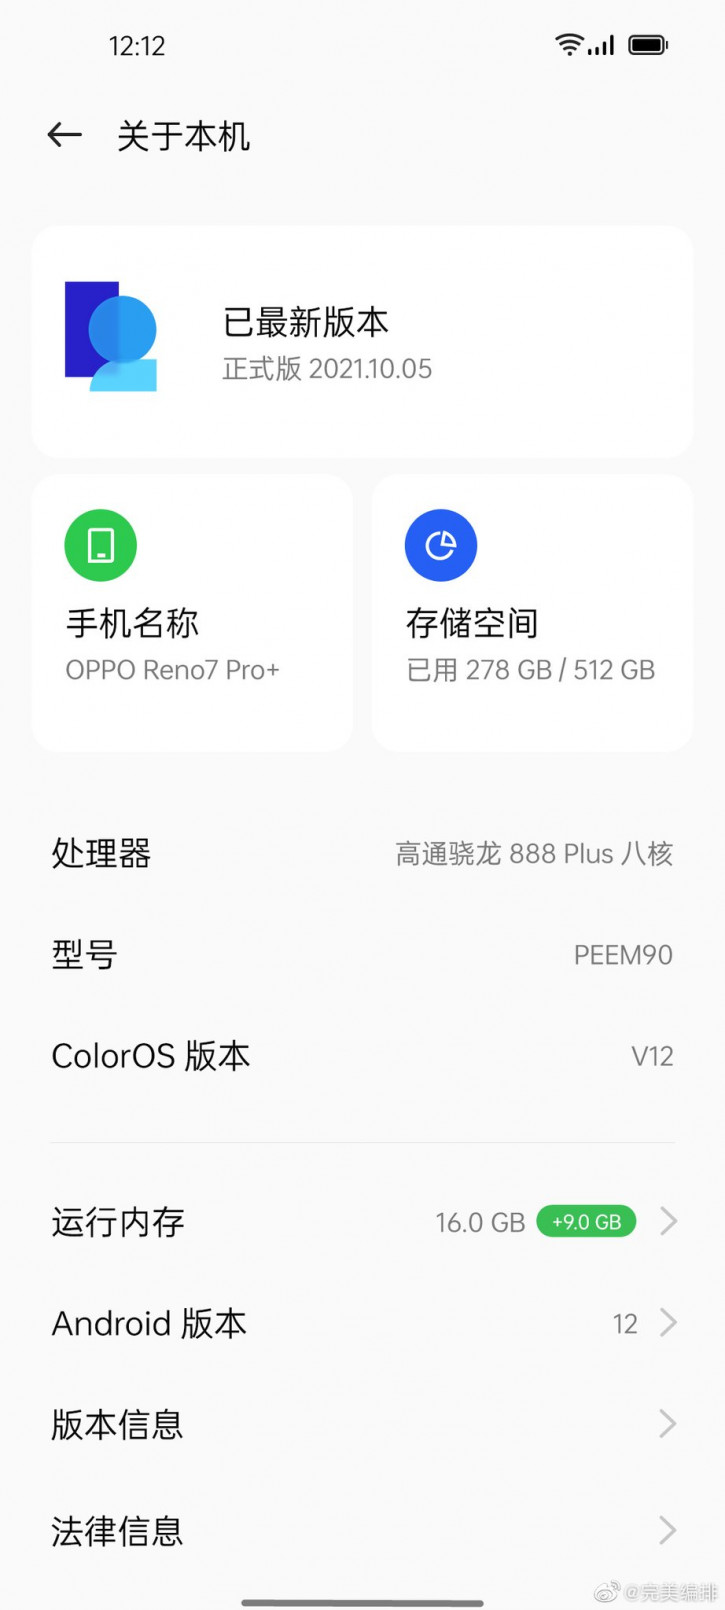 OPPO Reno 7 Pro+: 25  , Android 12   